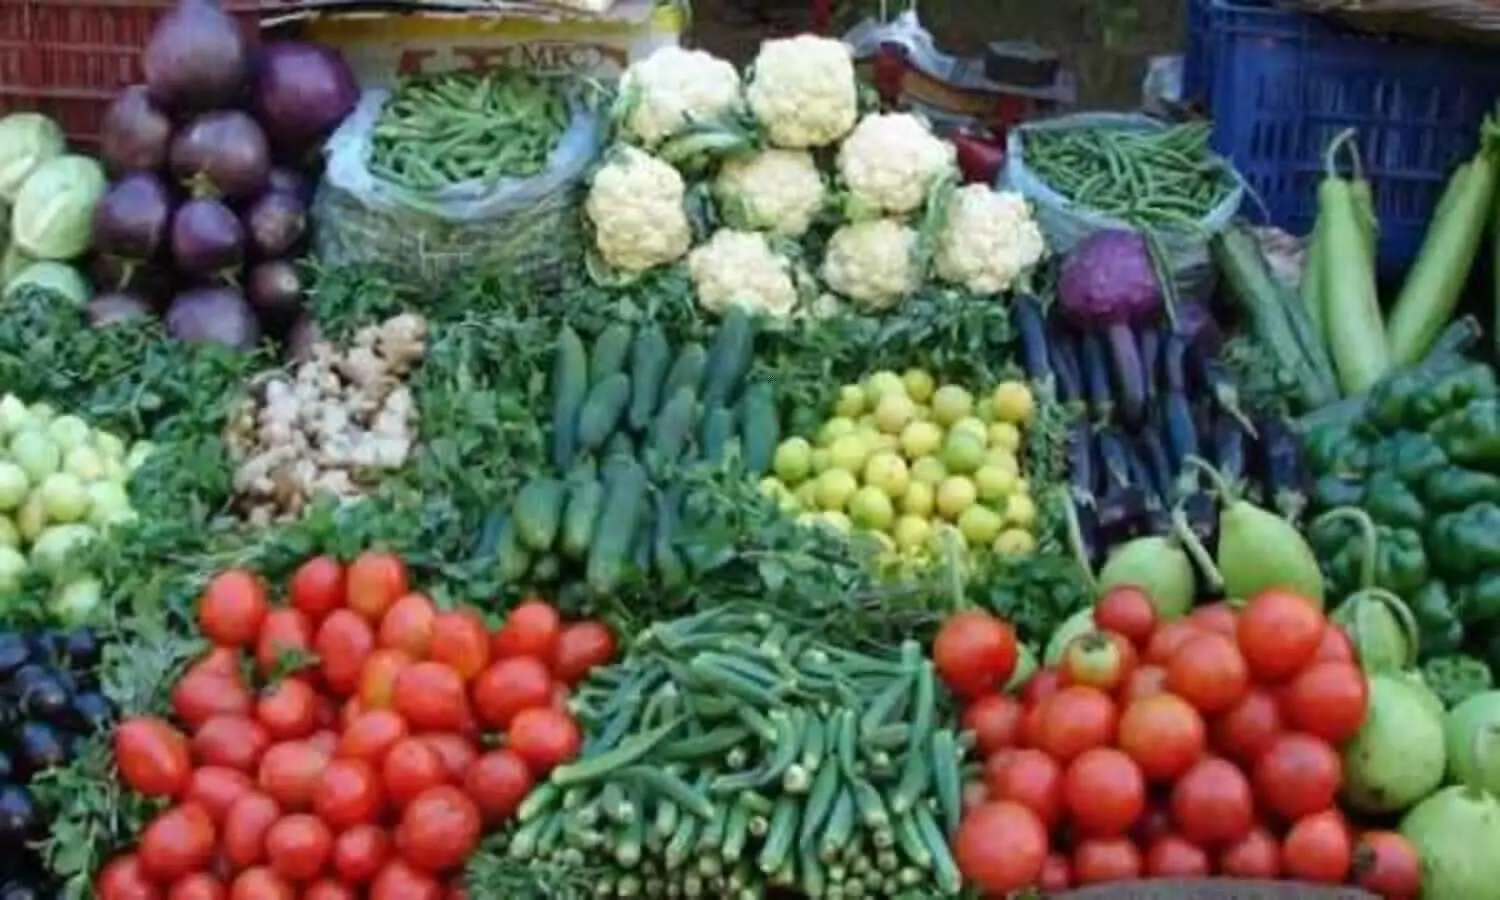 महंगाई की मार: सब्जियों के दाम छूने लगे आसमान, भोजन का बिगड़ा जायका